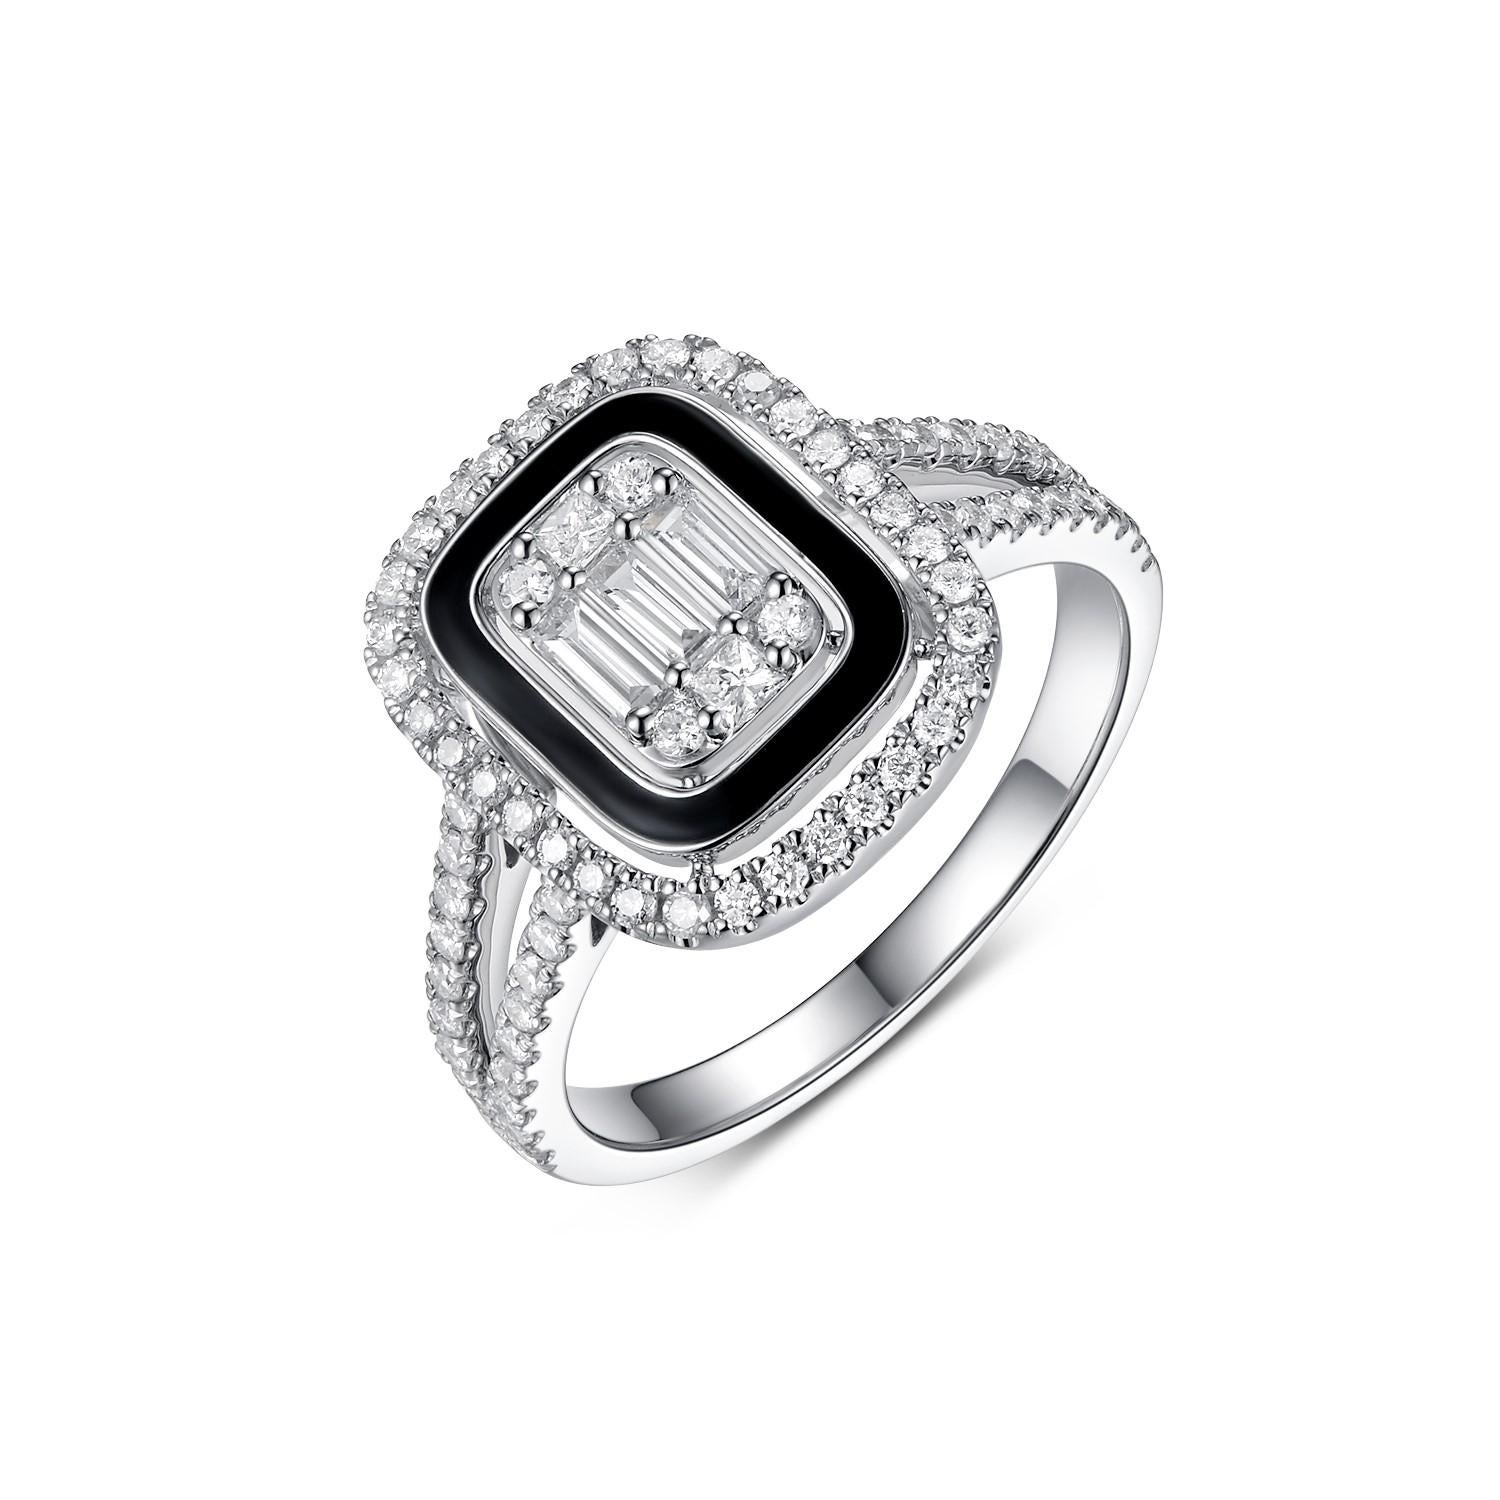 Dieser schillernde Baguette-Diamantring aus schwarzer Emaille ist eine bemerkenswerte Verbindung von Vintage-Flair und zeitgenössischer Eleganz. Das Herzstück dieses Rings aus glänzendem 14-karätigem Weißgold ist der strahlende Baguette-Diamant von